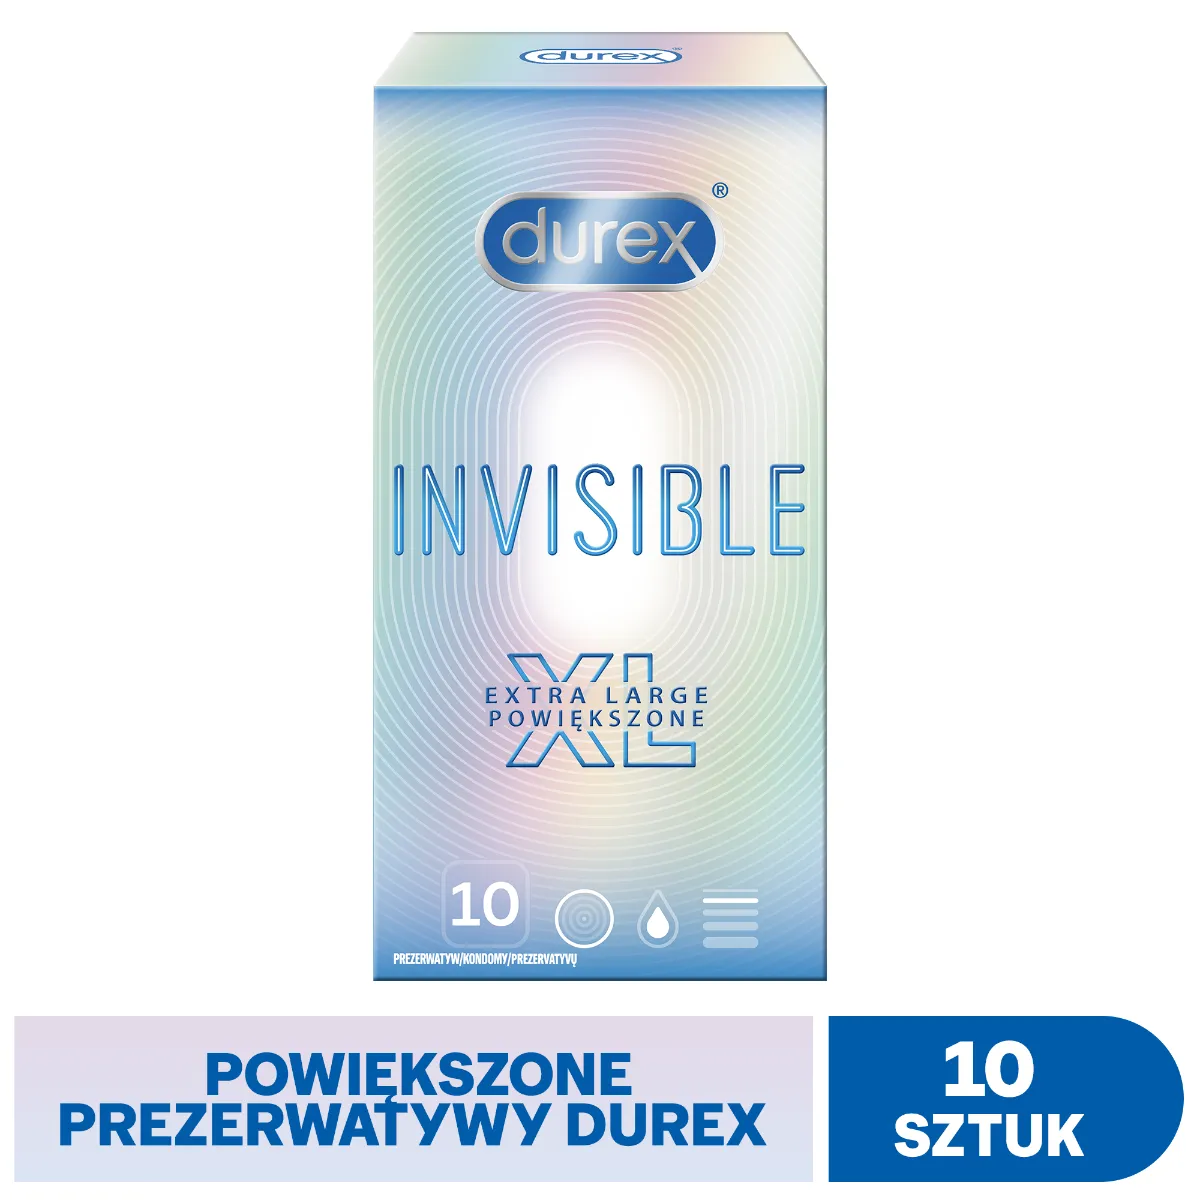 Durex Invisible XL, prezerwatywy, 10 sztuk